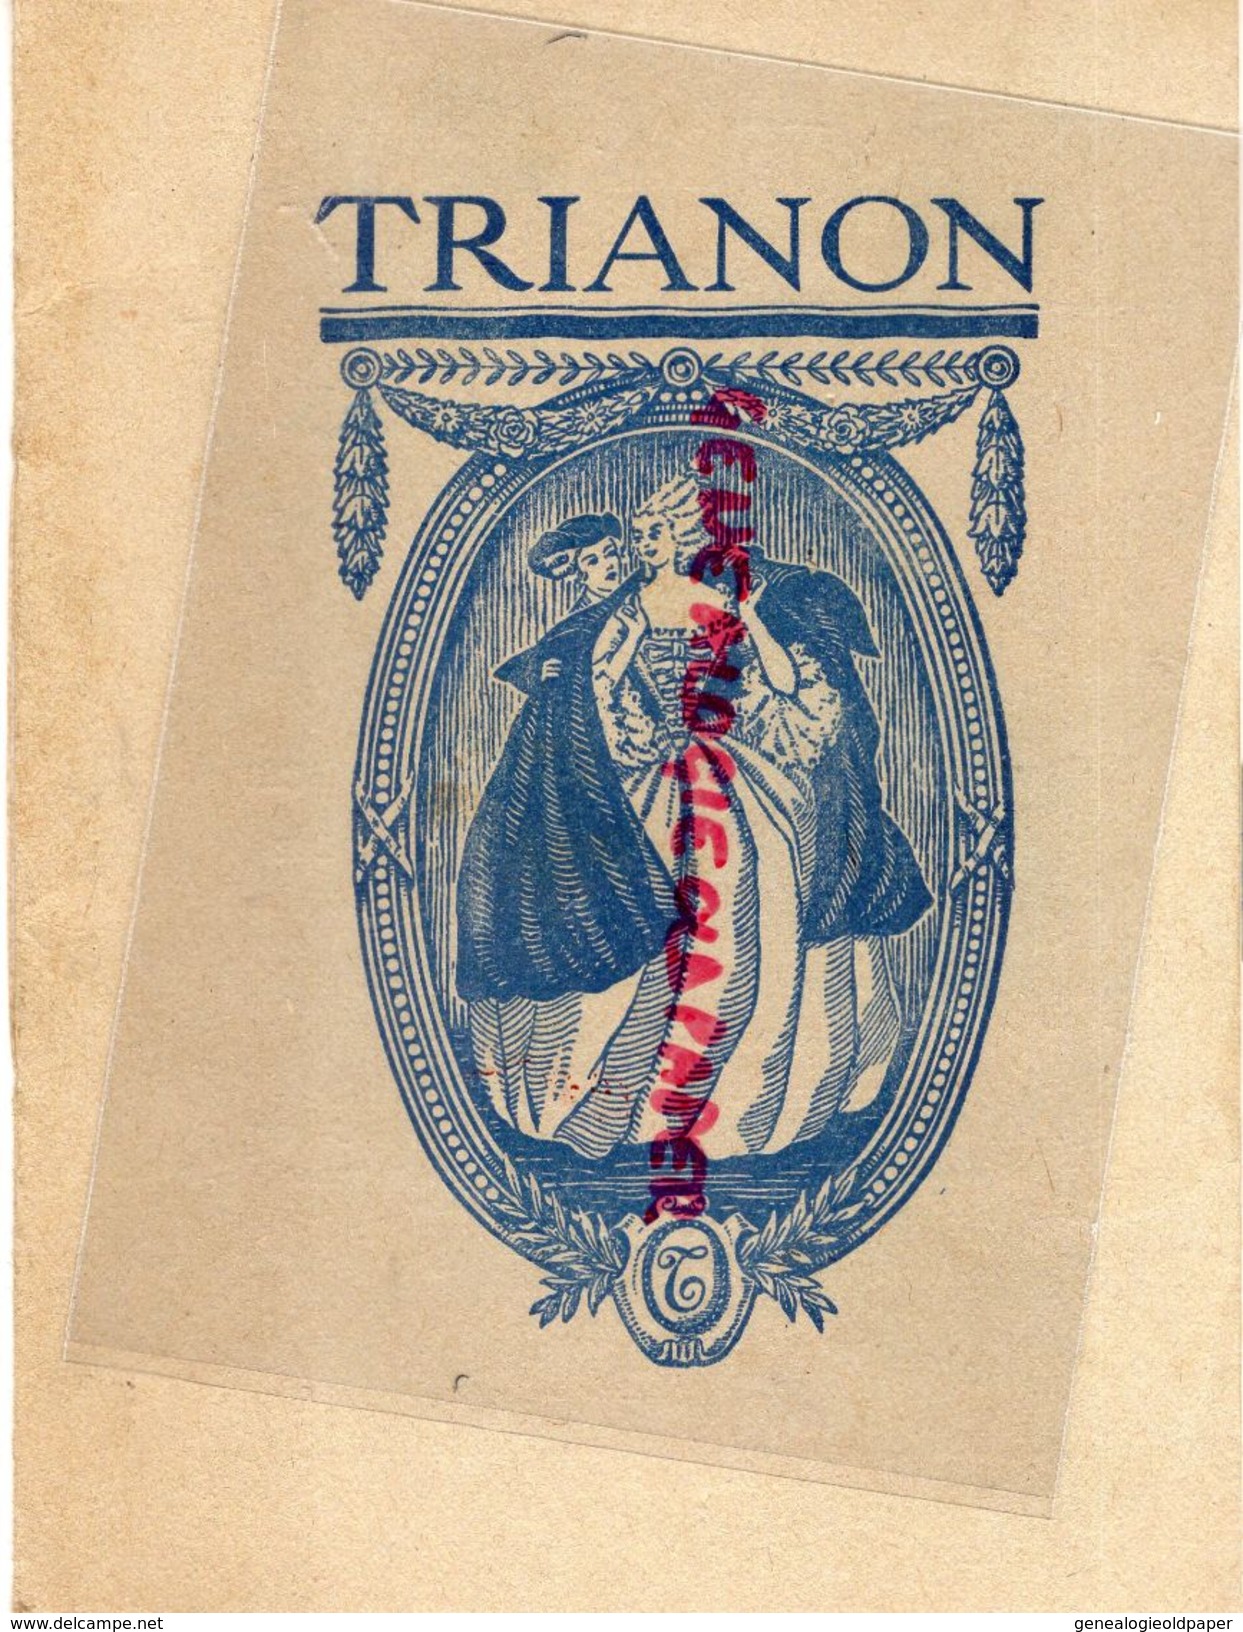 33- BORDEAUX- PROGRAMME THEATRE TRIANON SAISON 1932-33-A.CAZAUBON LE BOUSCAT-UNIVERSAL HOTEL-DARCY-CASTERA-LOUIS LEGER - Programma's